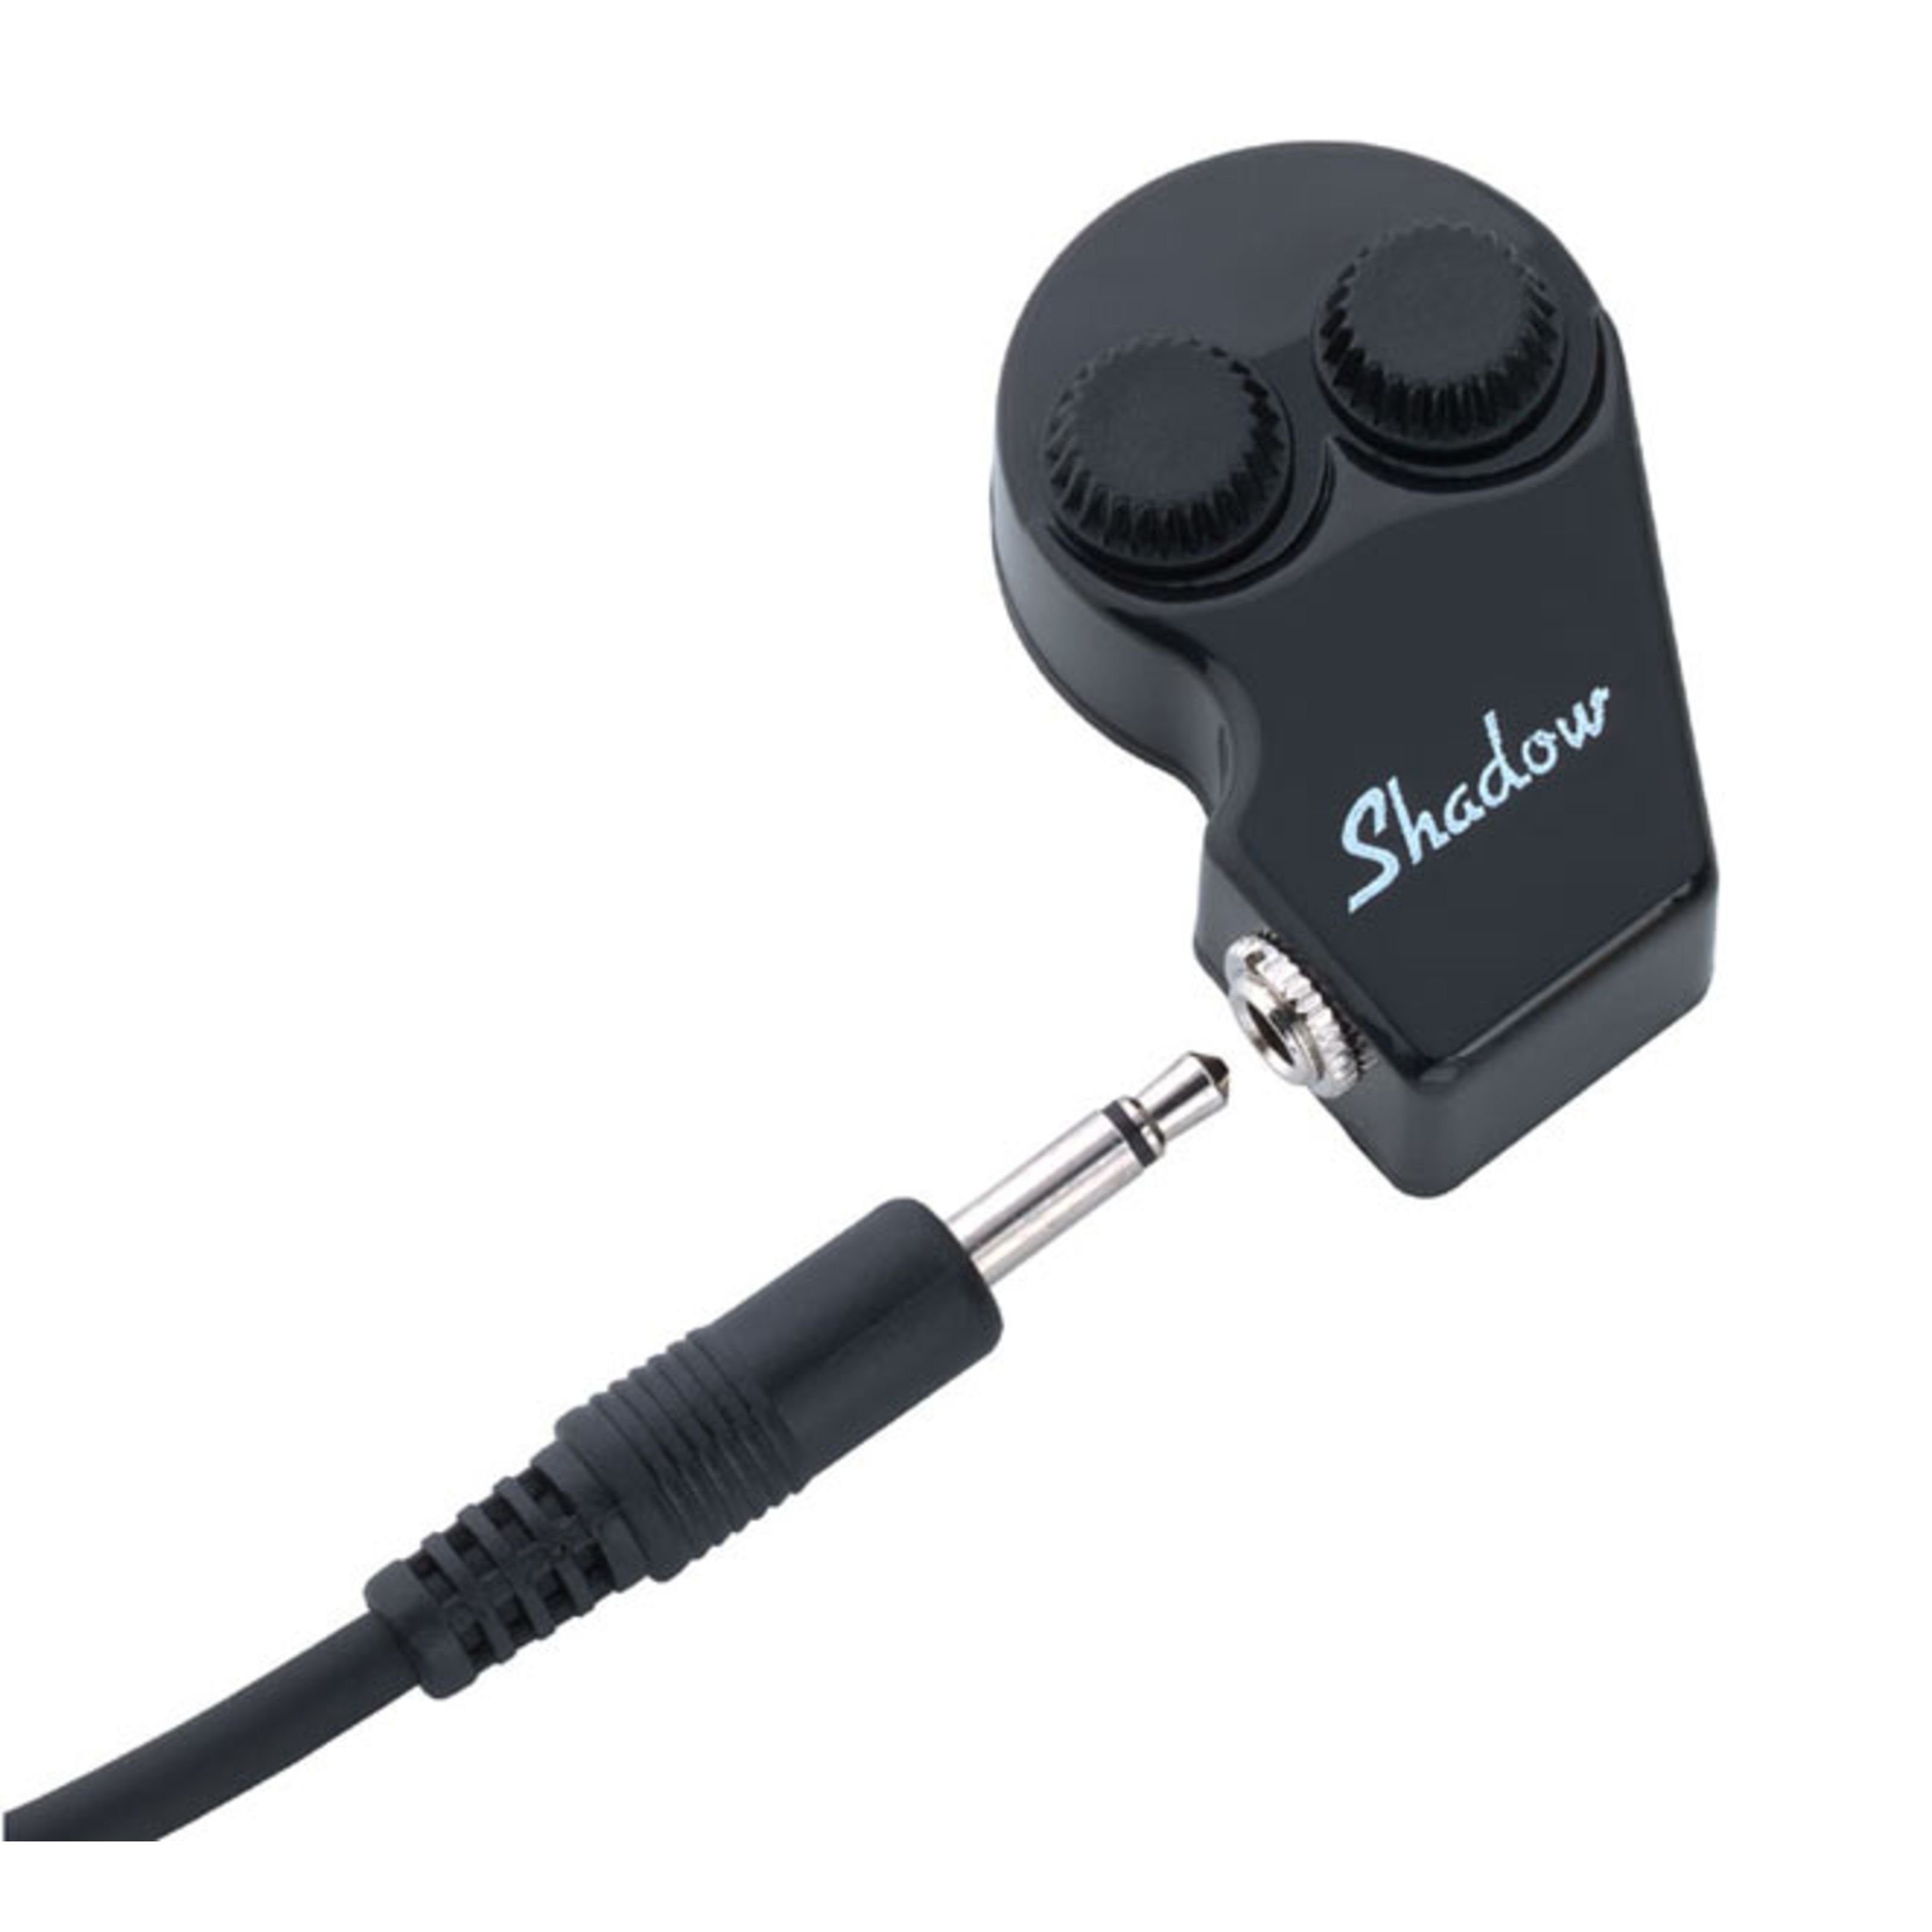 Shadow Tonabnehmer, (2000 Kontaktpiezo Regler mit 4m Kabel, ersatzteile für Gitarren, Tonabnehmer Akustische Gitarre), SH 2000 Universal Transducer Pickup - Tonabnehmer für